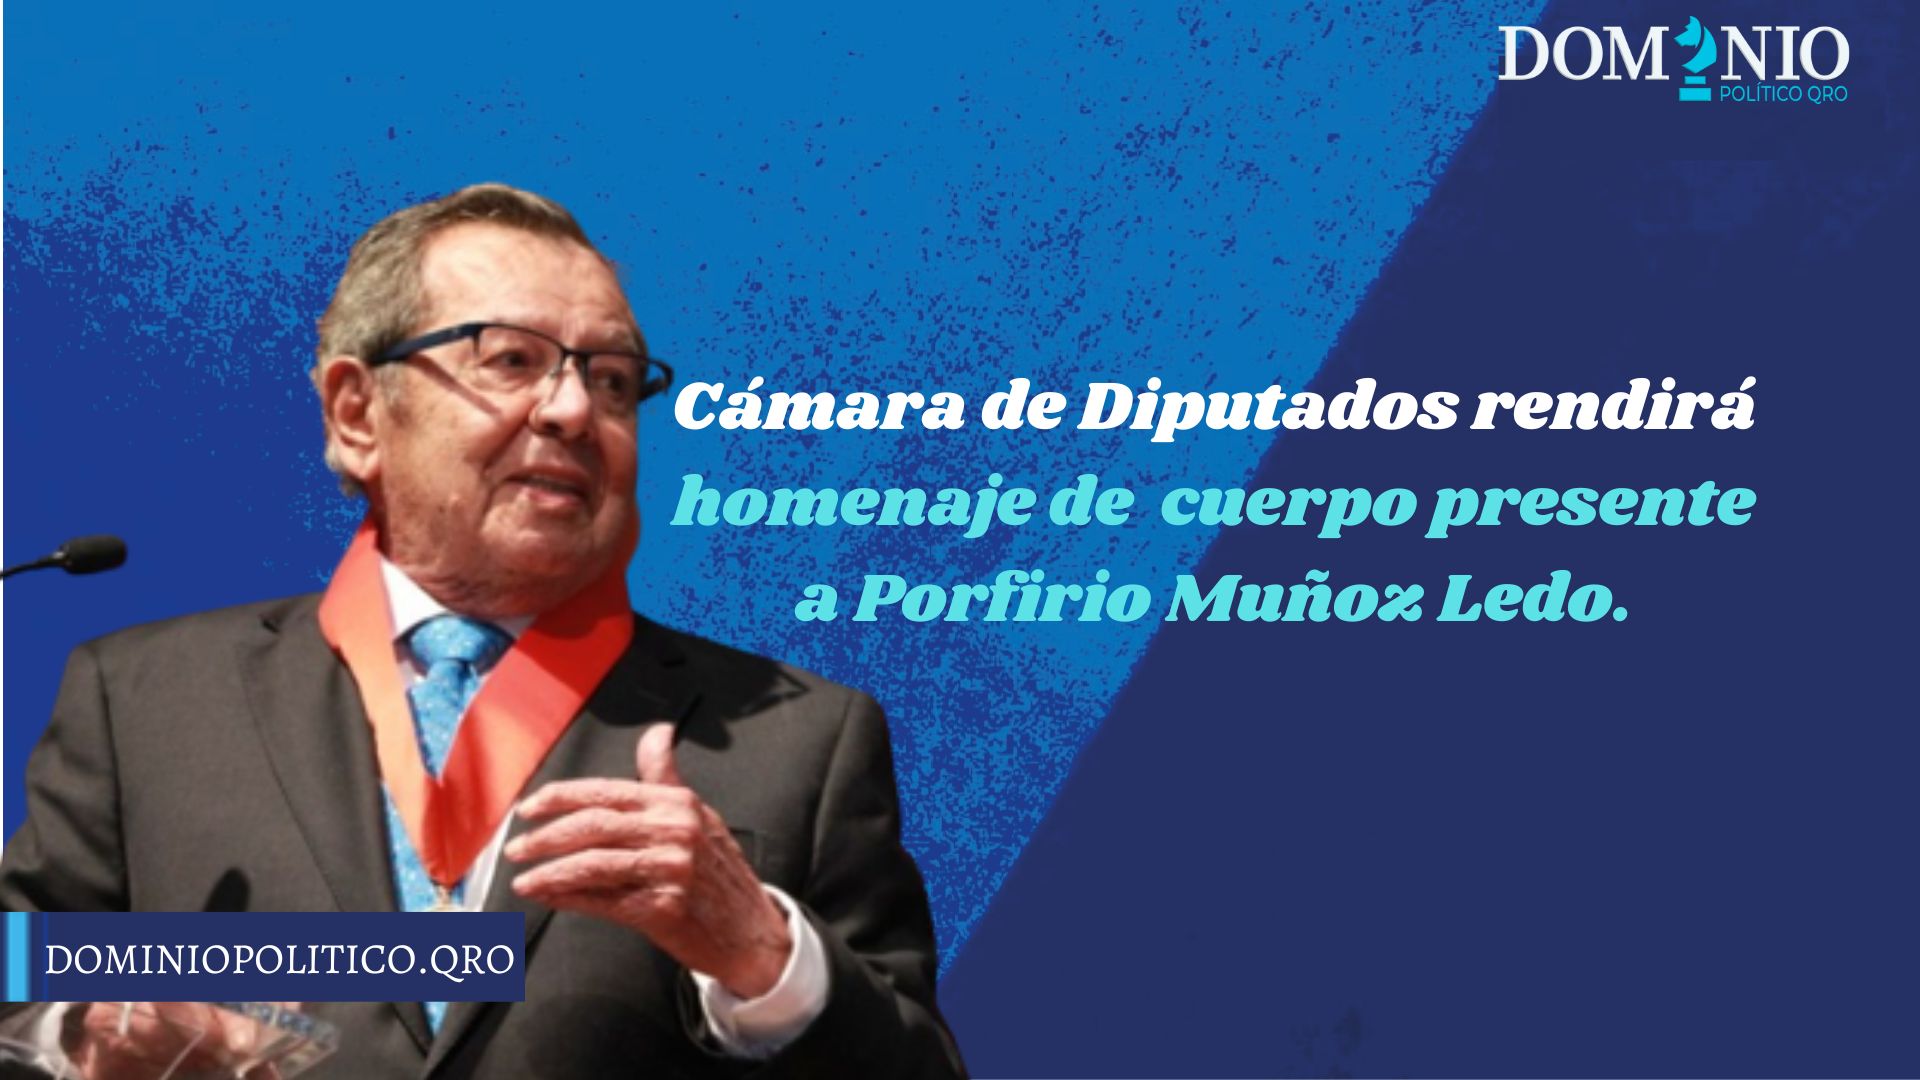 Cámara de Diputados rendirá homenaje de cuerpo presente a Porfirio Muñoz Ledo.